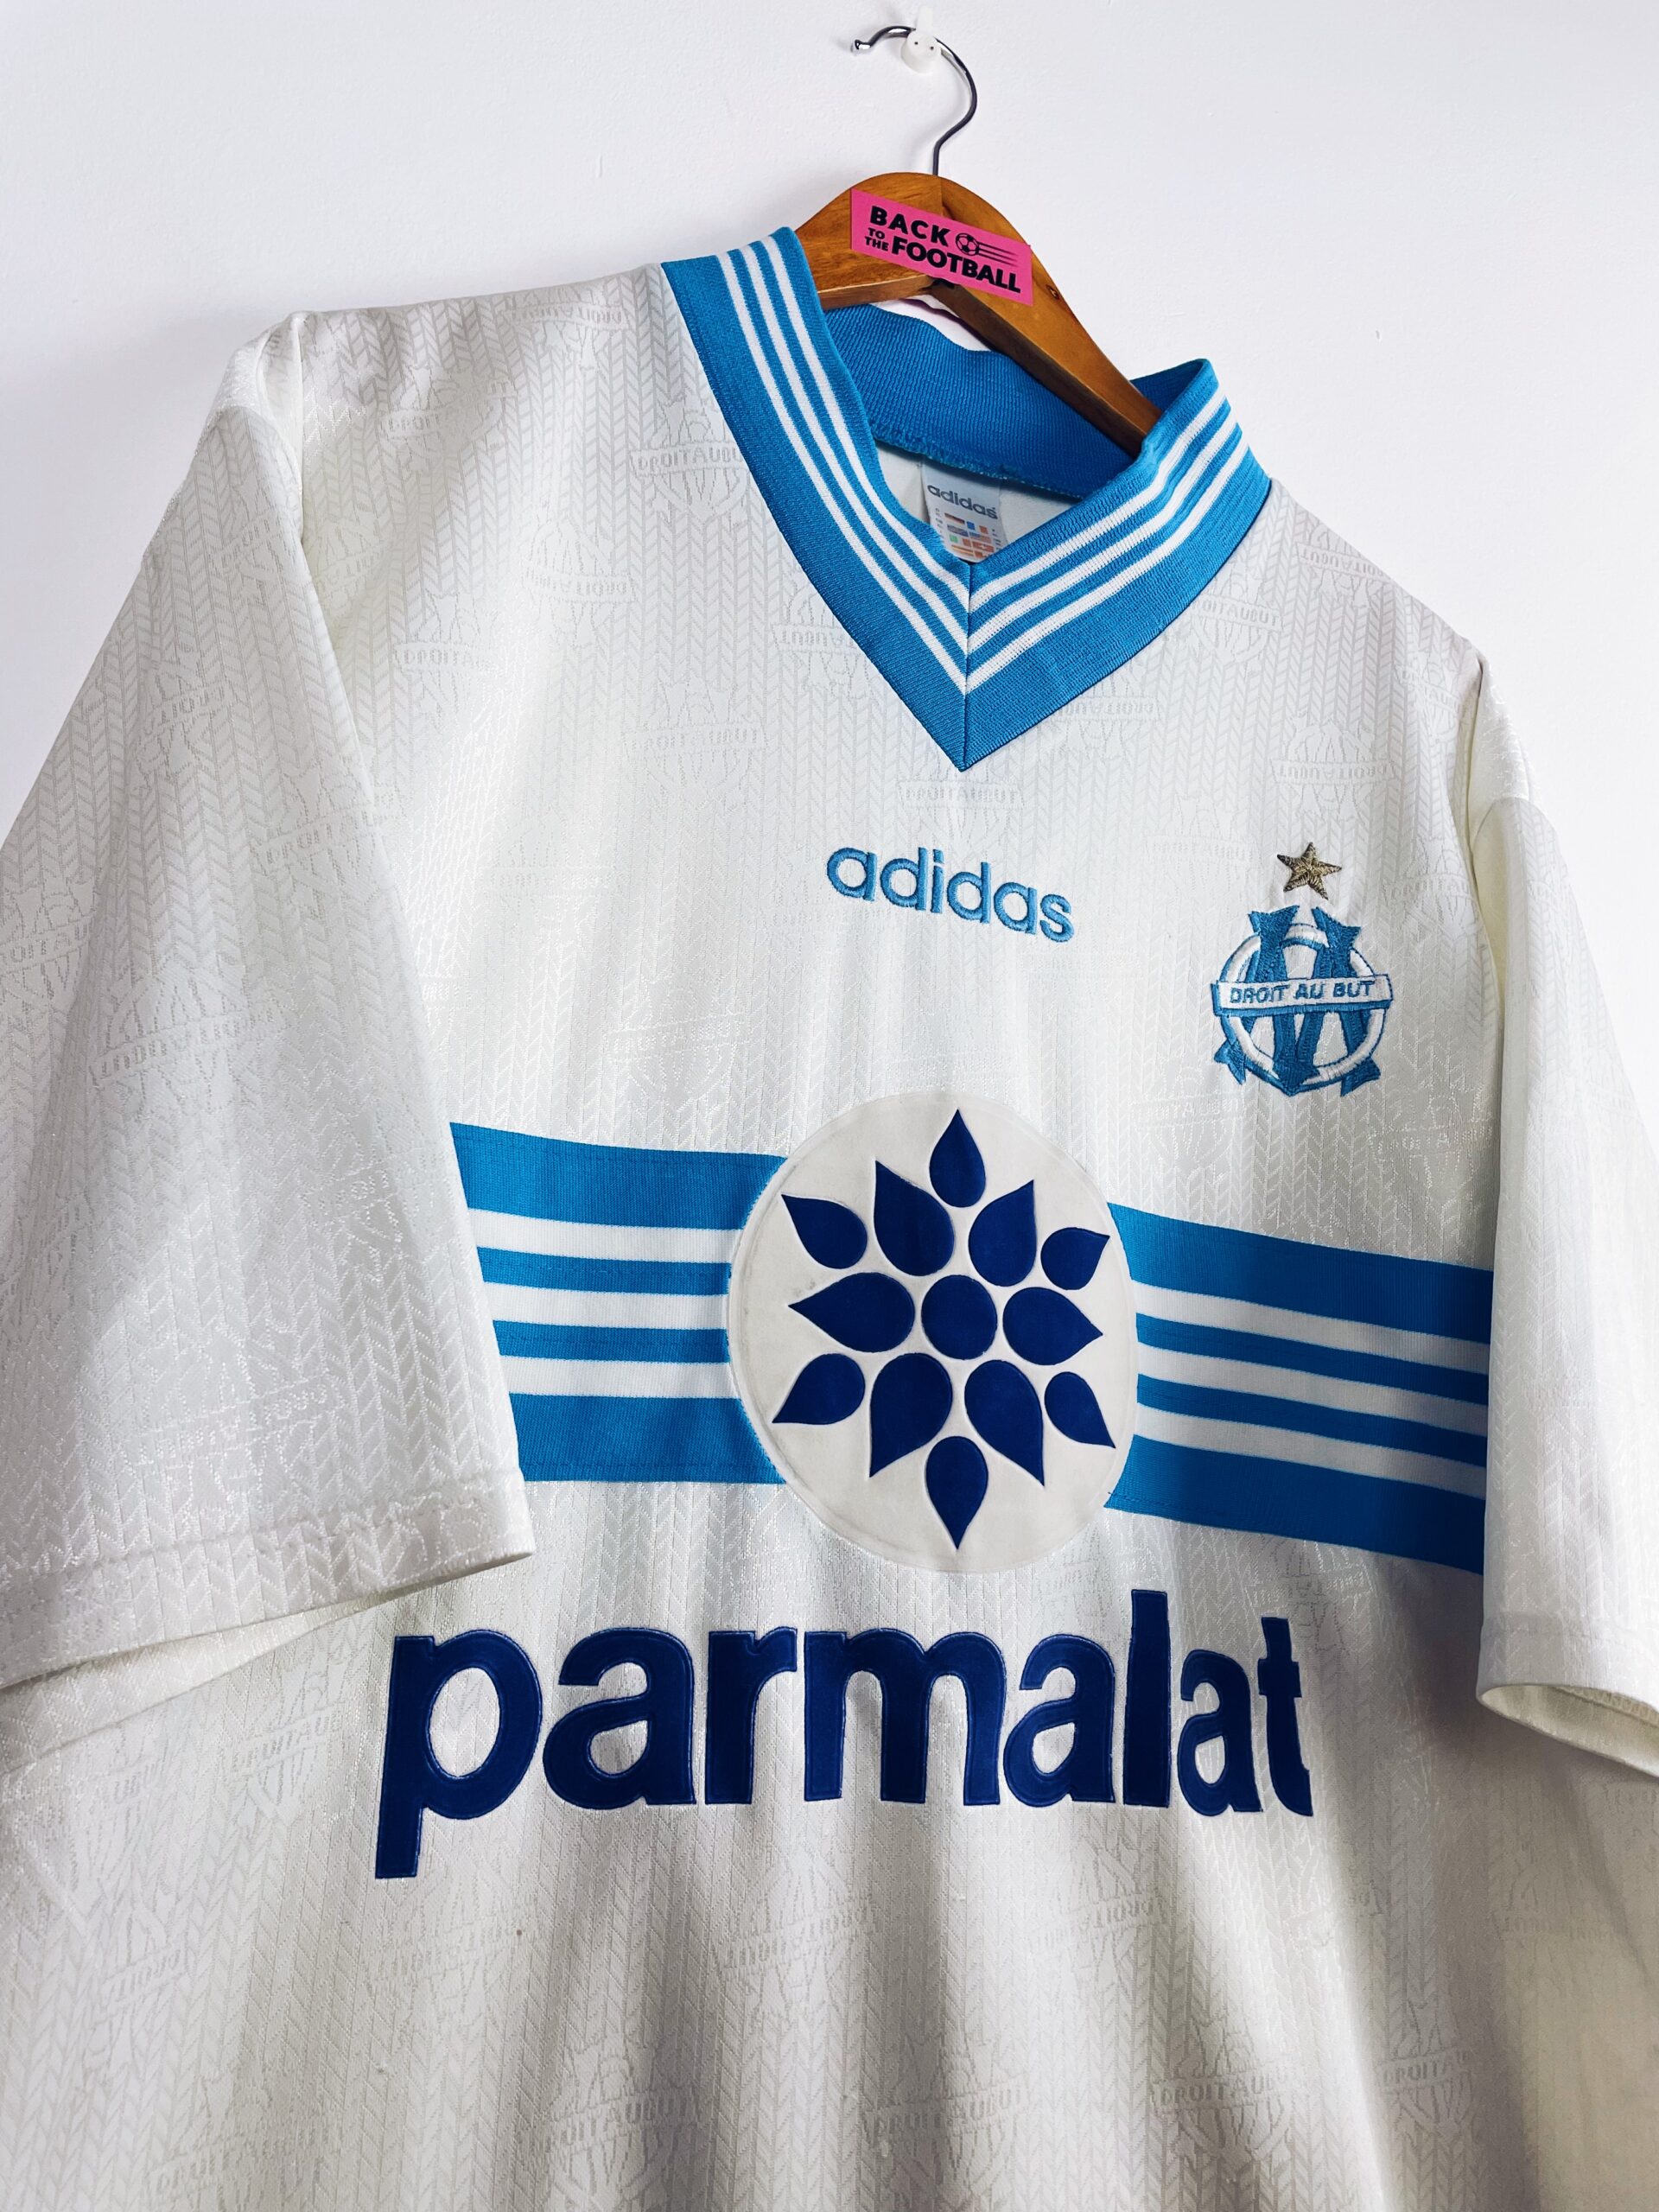 Un nouveau maillot domicile vintage pour l'Olympique de Marseille